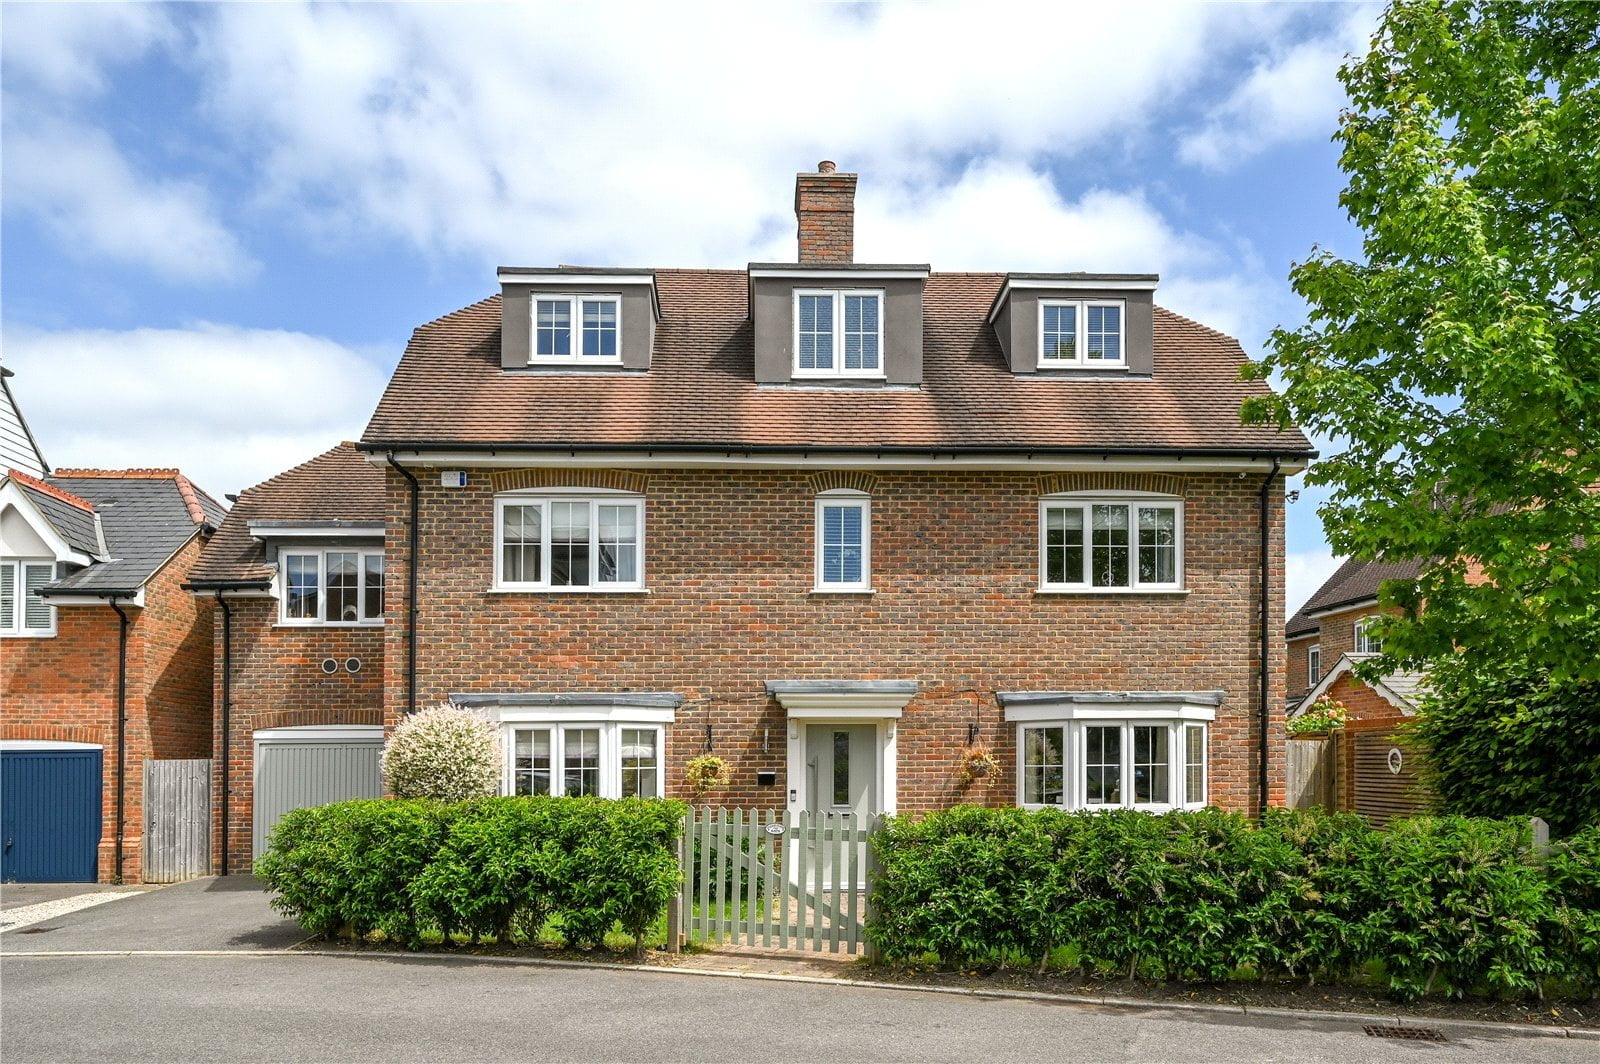 Heydon Way, Broadbridge Heath, Horsham, West Sussex | residential-sales